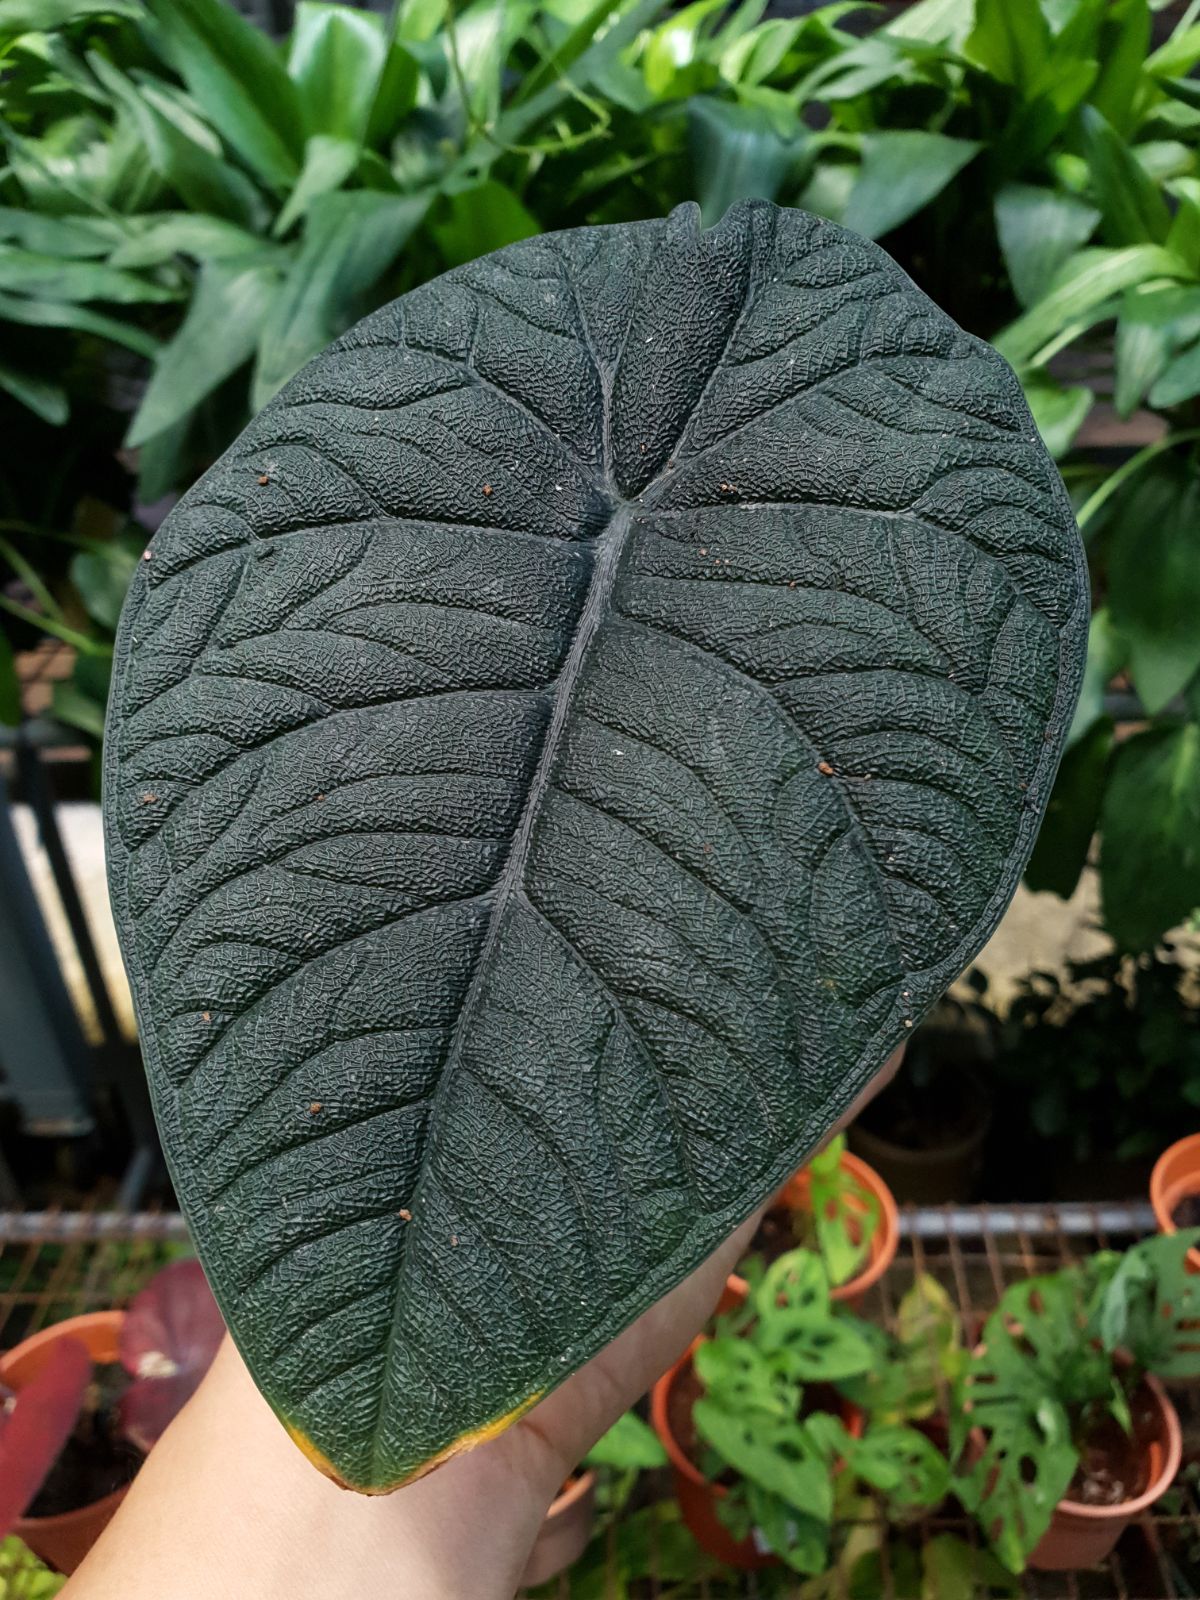 甜瓜属植物的巨大的黑色粗糙叶子